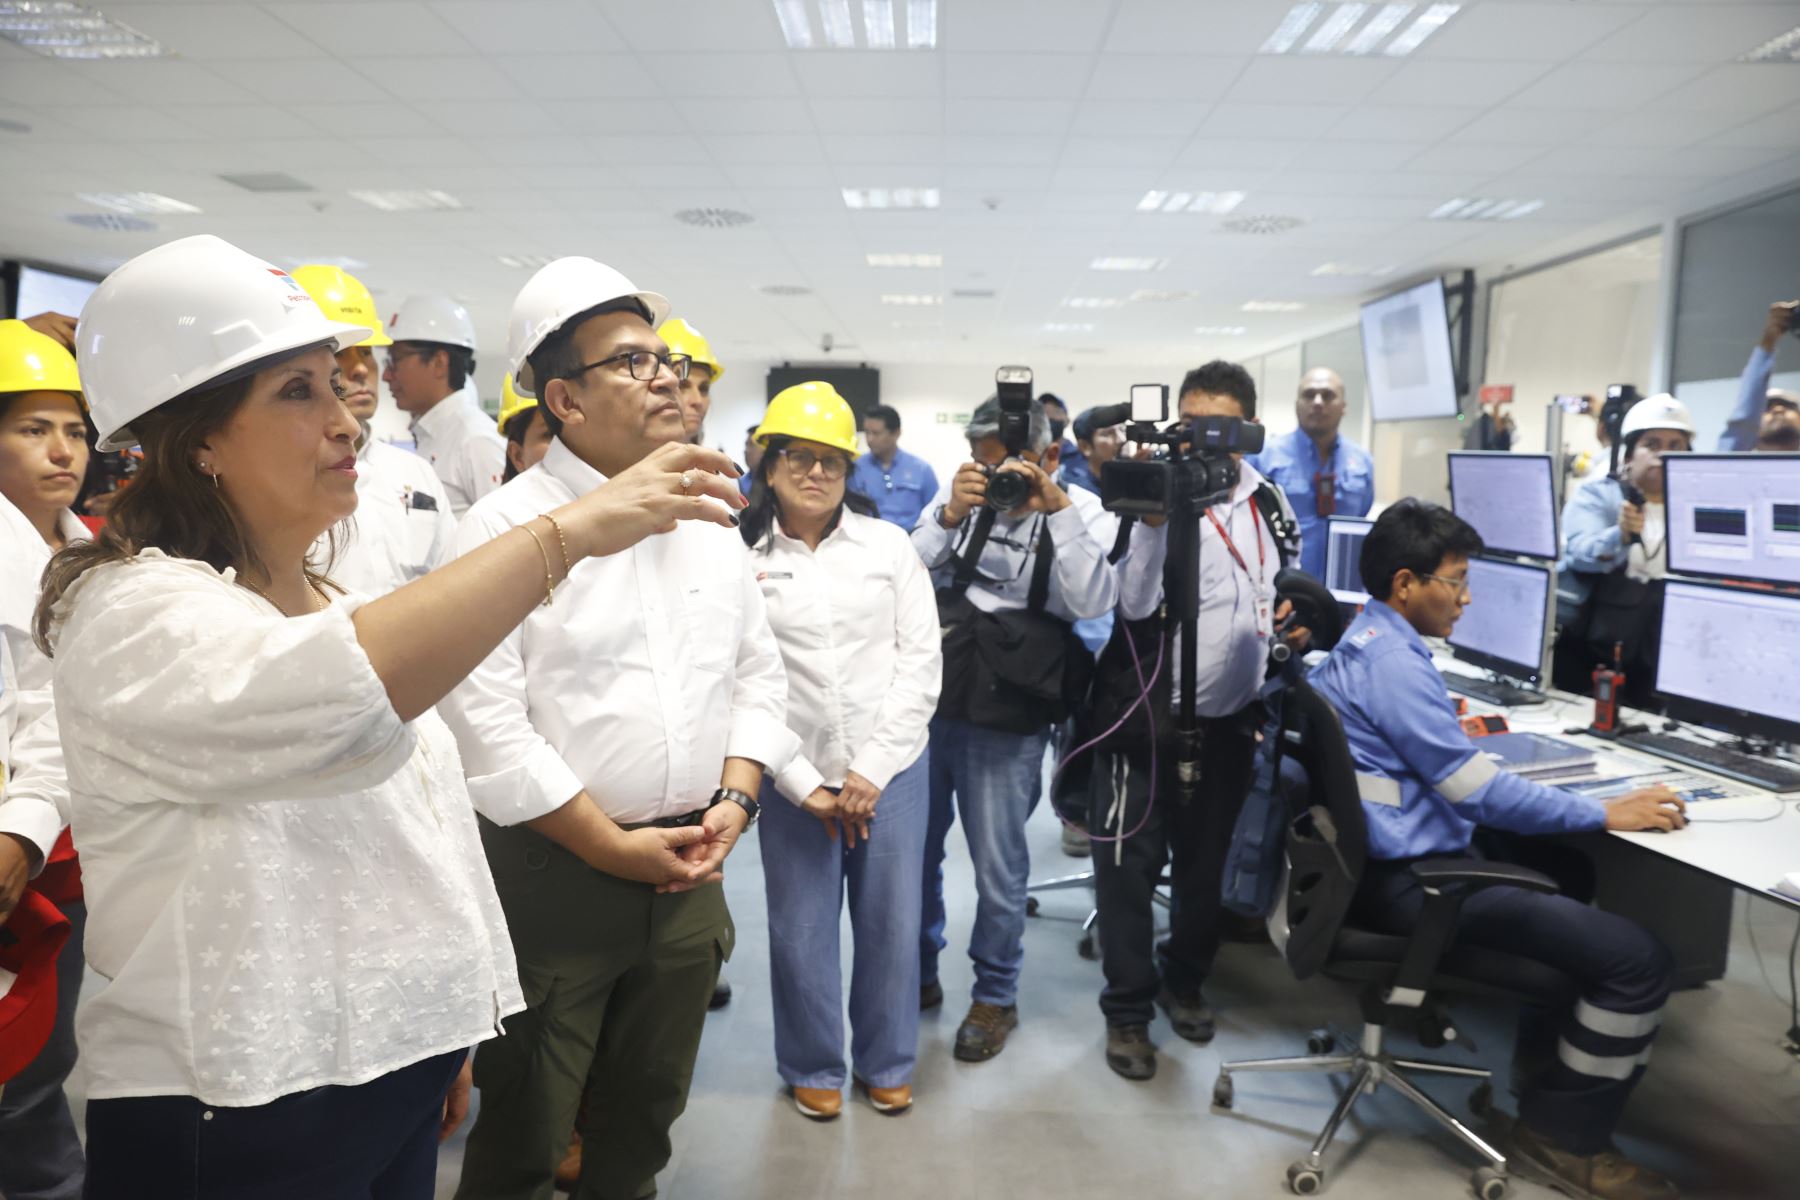 La presidenta Dina Boluarte realizó una visita técnica a la nueva refinería de Talara, en la región Piura, la cual garantizará la producción de combustible limpio para atender la demanda interna, y evitará depender de la importación de hidrocarburos.

Foto: ANDINA/Presidencia Perú